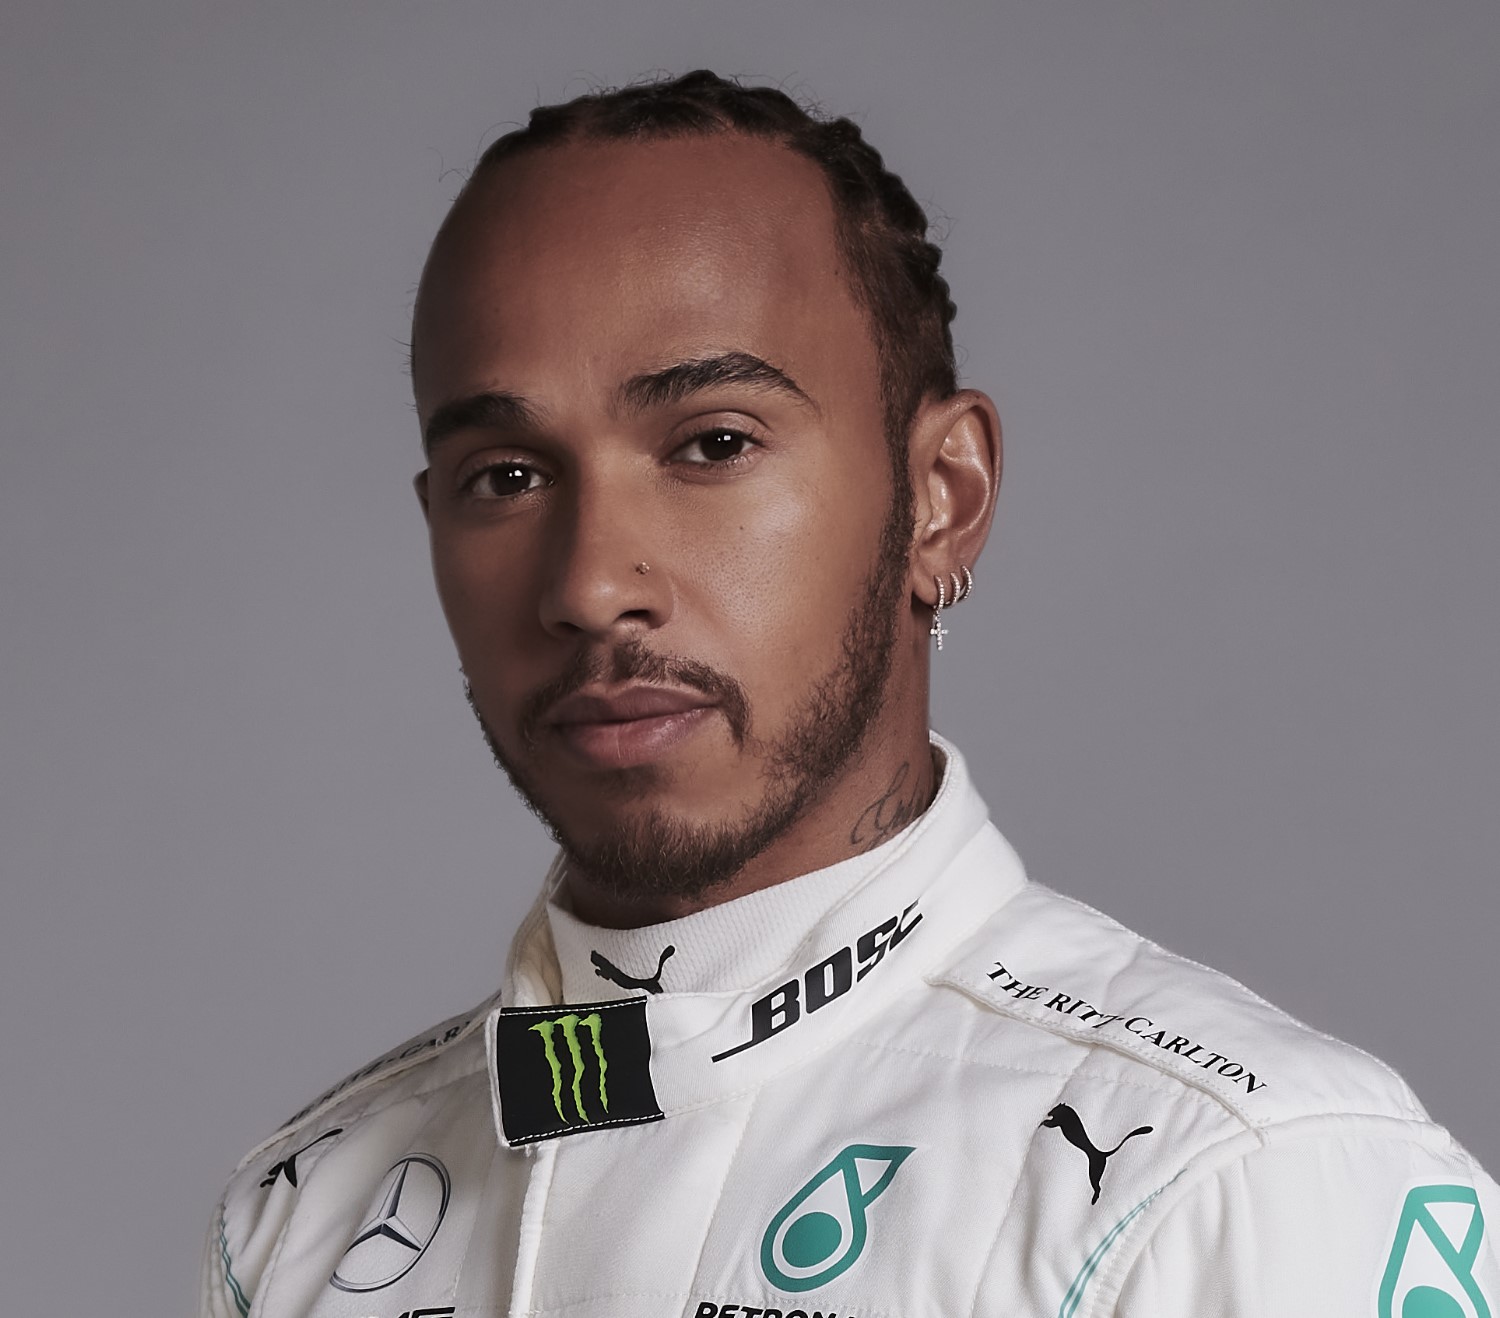 Hamilton wants to remain a Mercedes brand ambassador